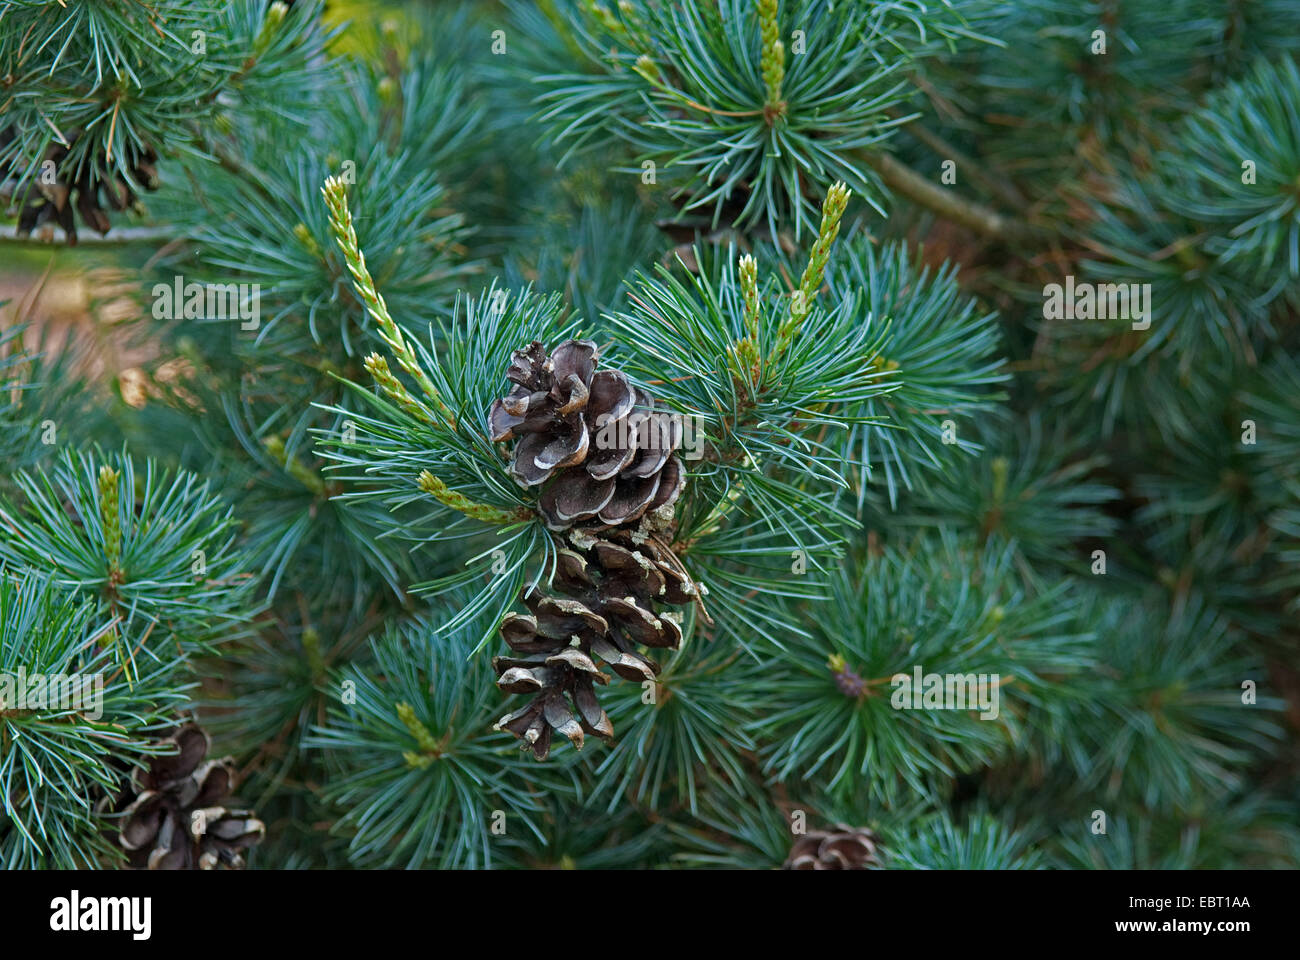 Pin blanc du Japon (Pinus parviflora 'Negishi', Pinus parviflora), Negishi, Negishi cultivar avec les cônes de la direction générale Banque D'Images